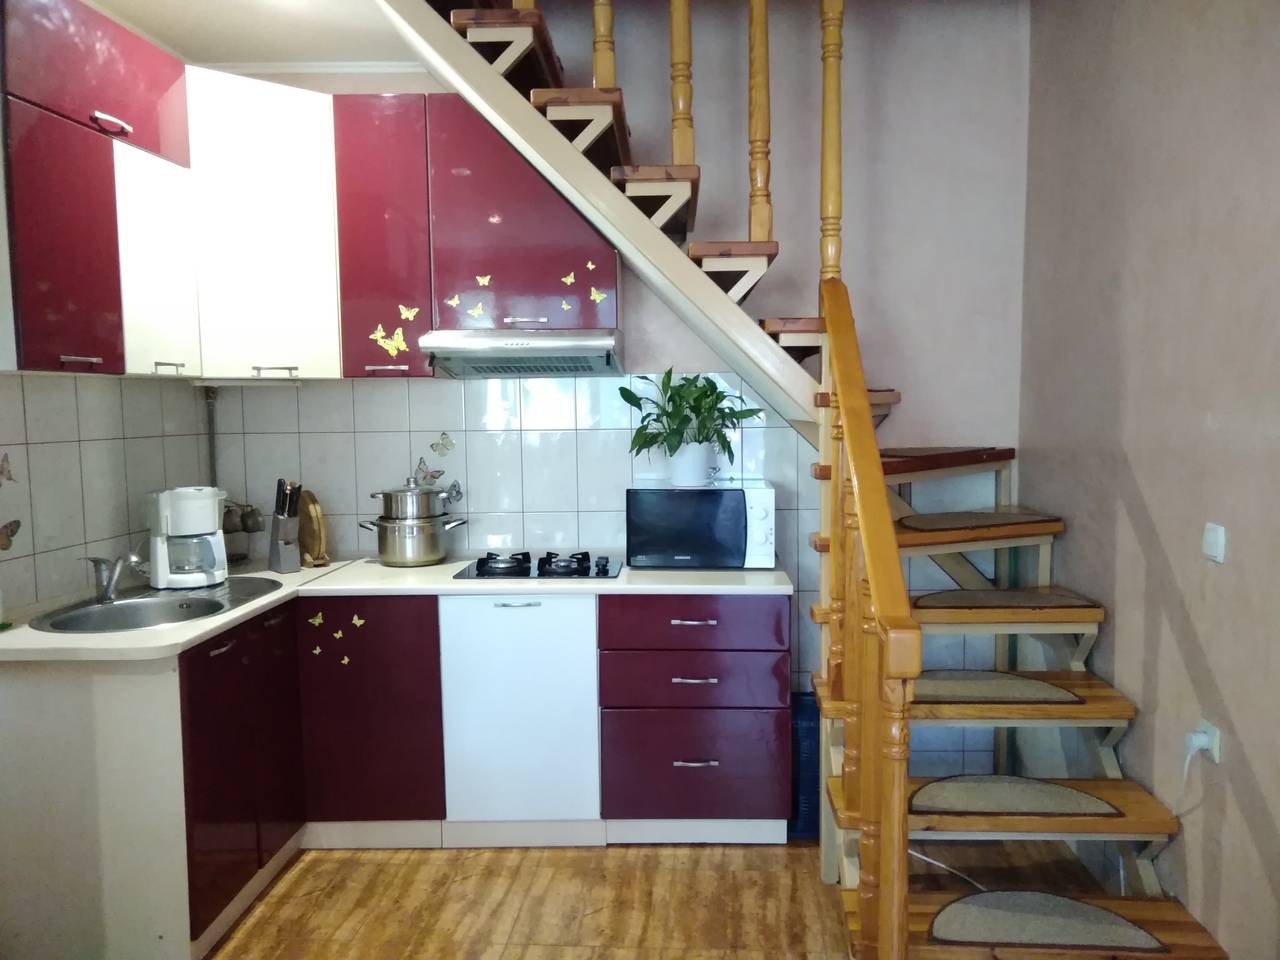 Кухни с лестницей дизайн: кухня в частном доме рядом лестницей на второй этаж (40 фото)